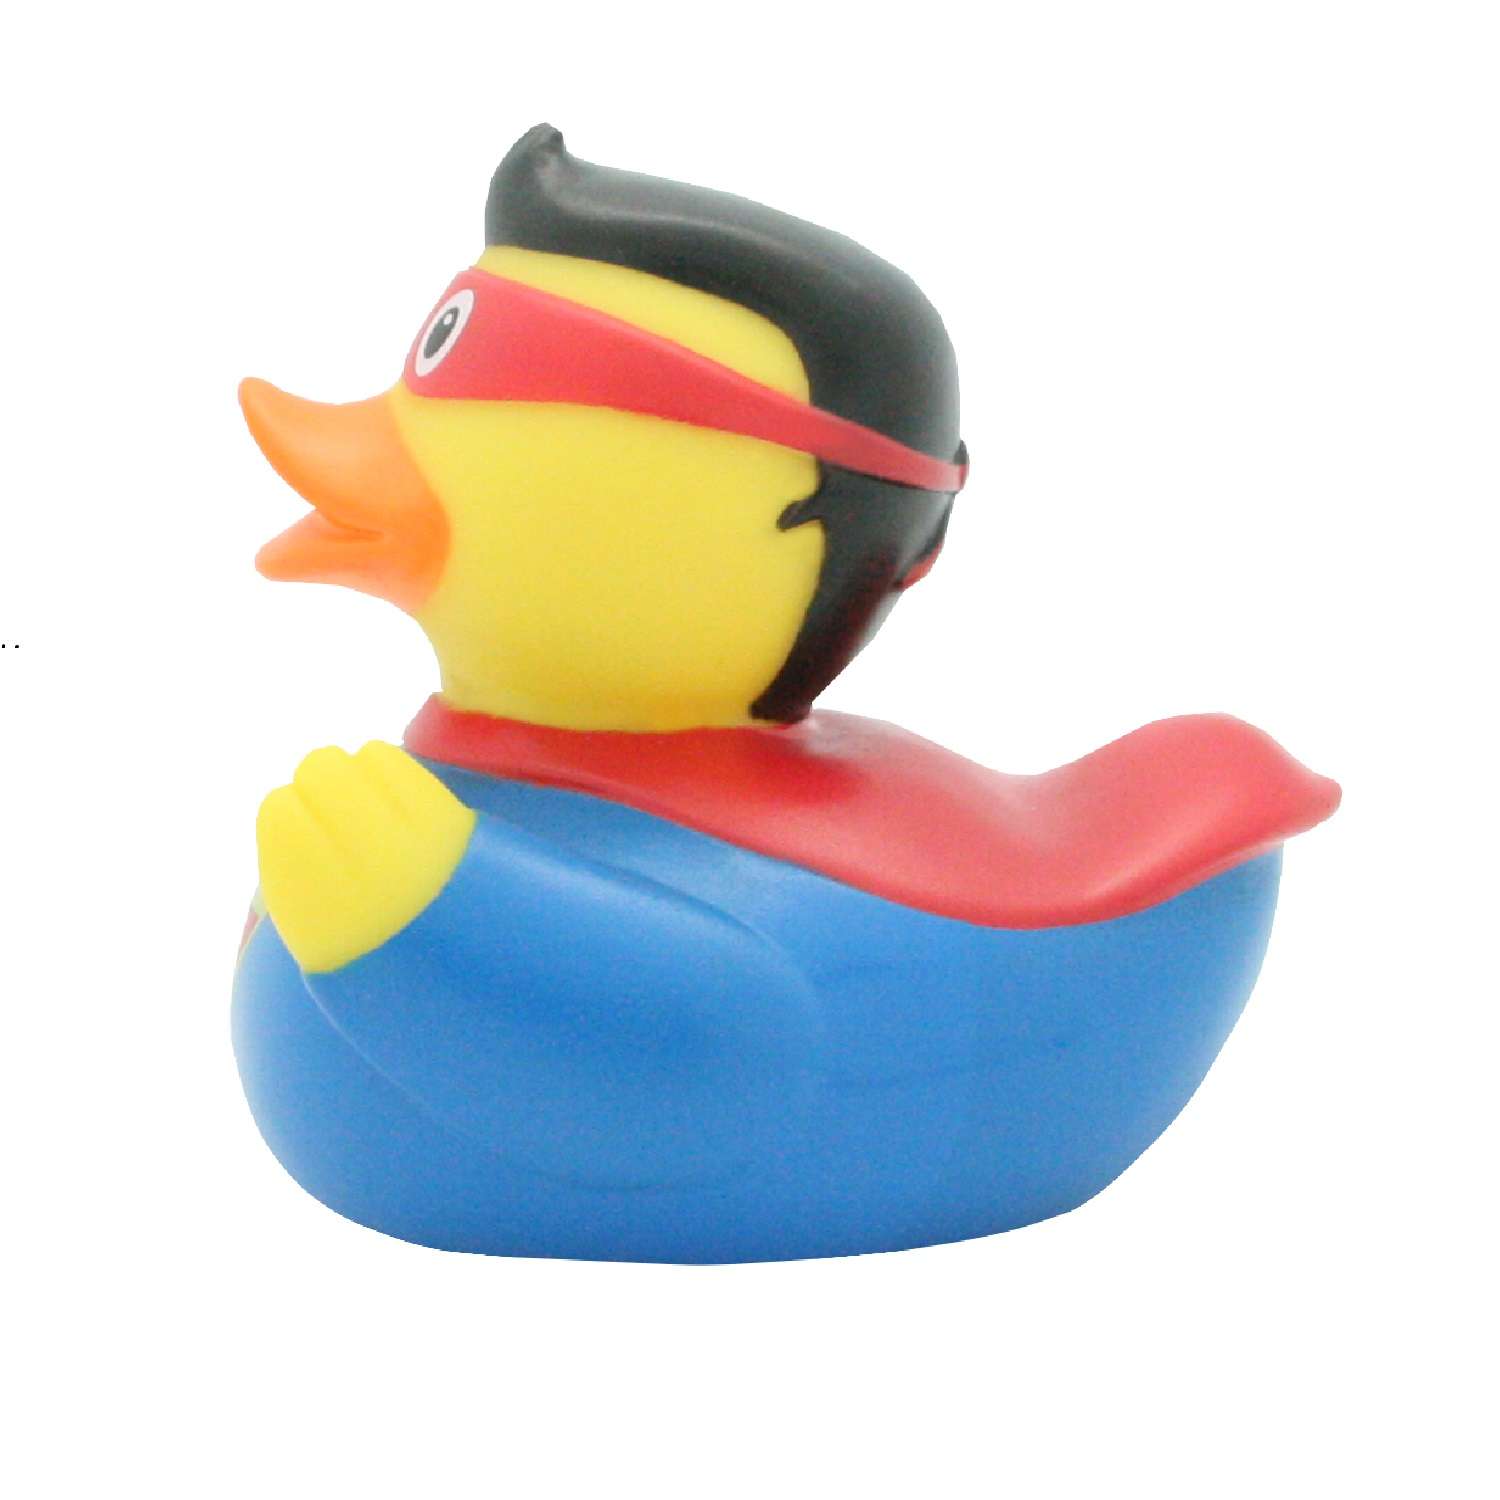 Игрушка Funny ducks для ванной Супер он уточка 1809 - фото 2